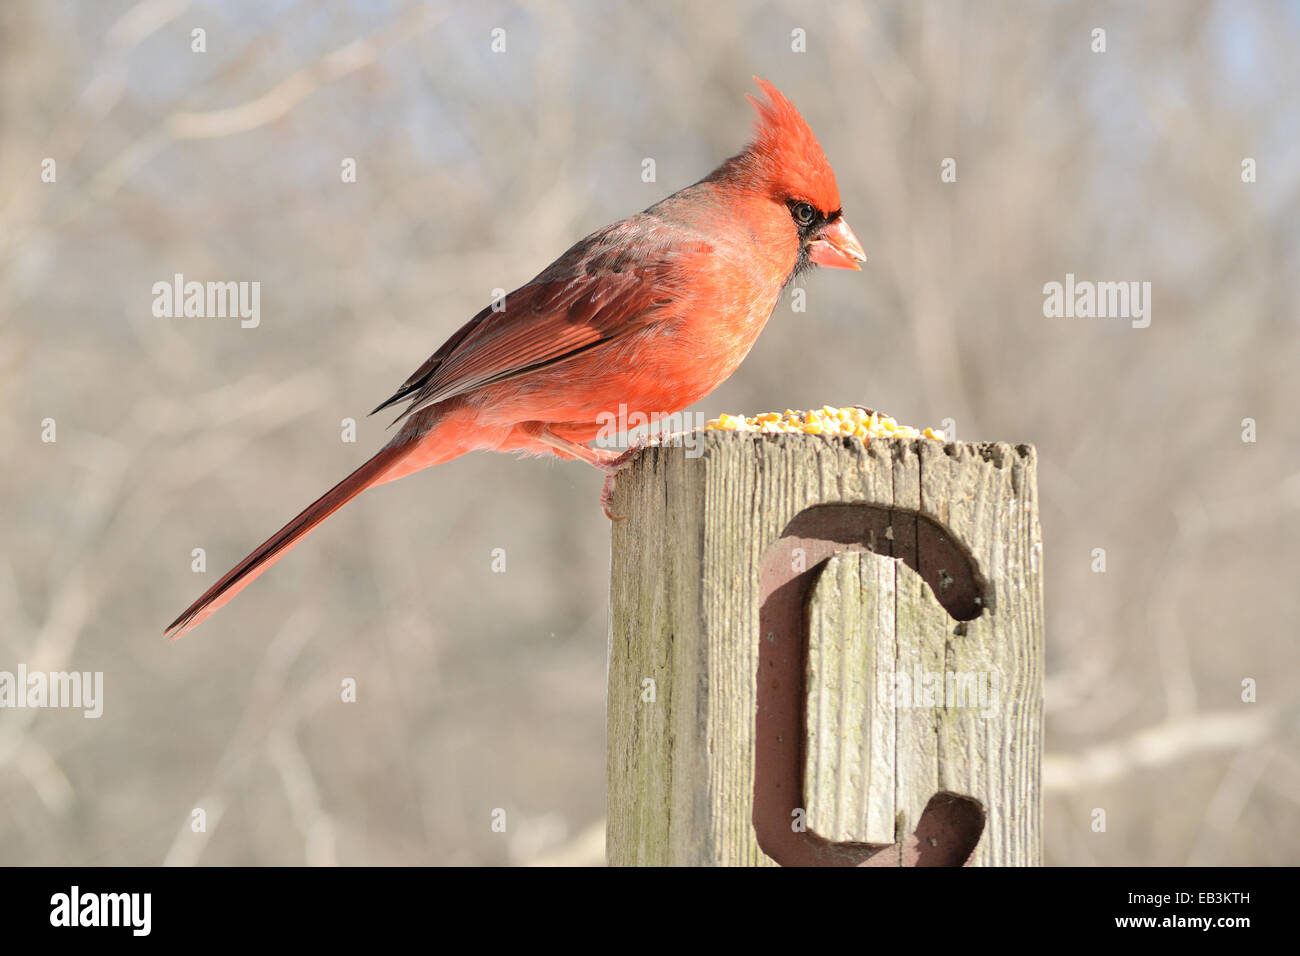 Un cardinal mâle perché sur un poste de manger les aliments pour oiseaux. Banque D'Images